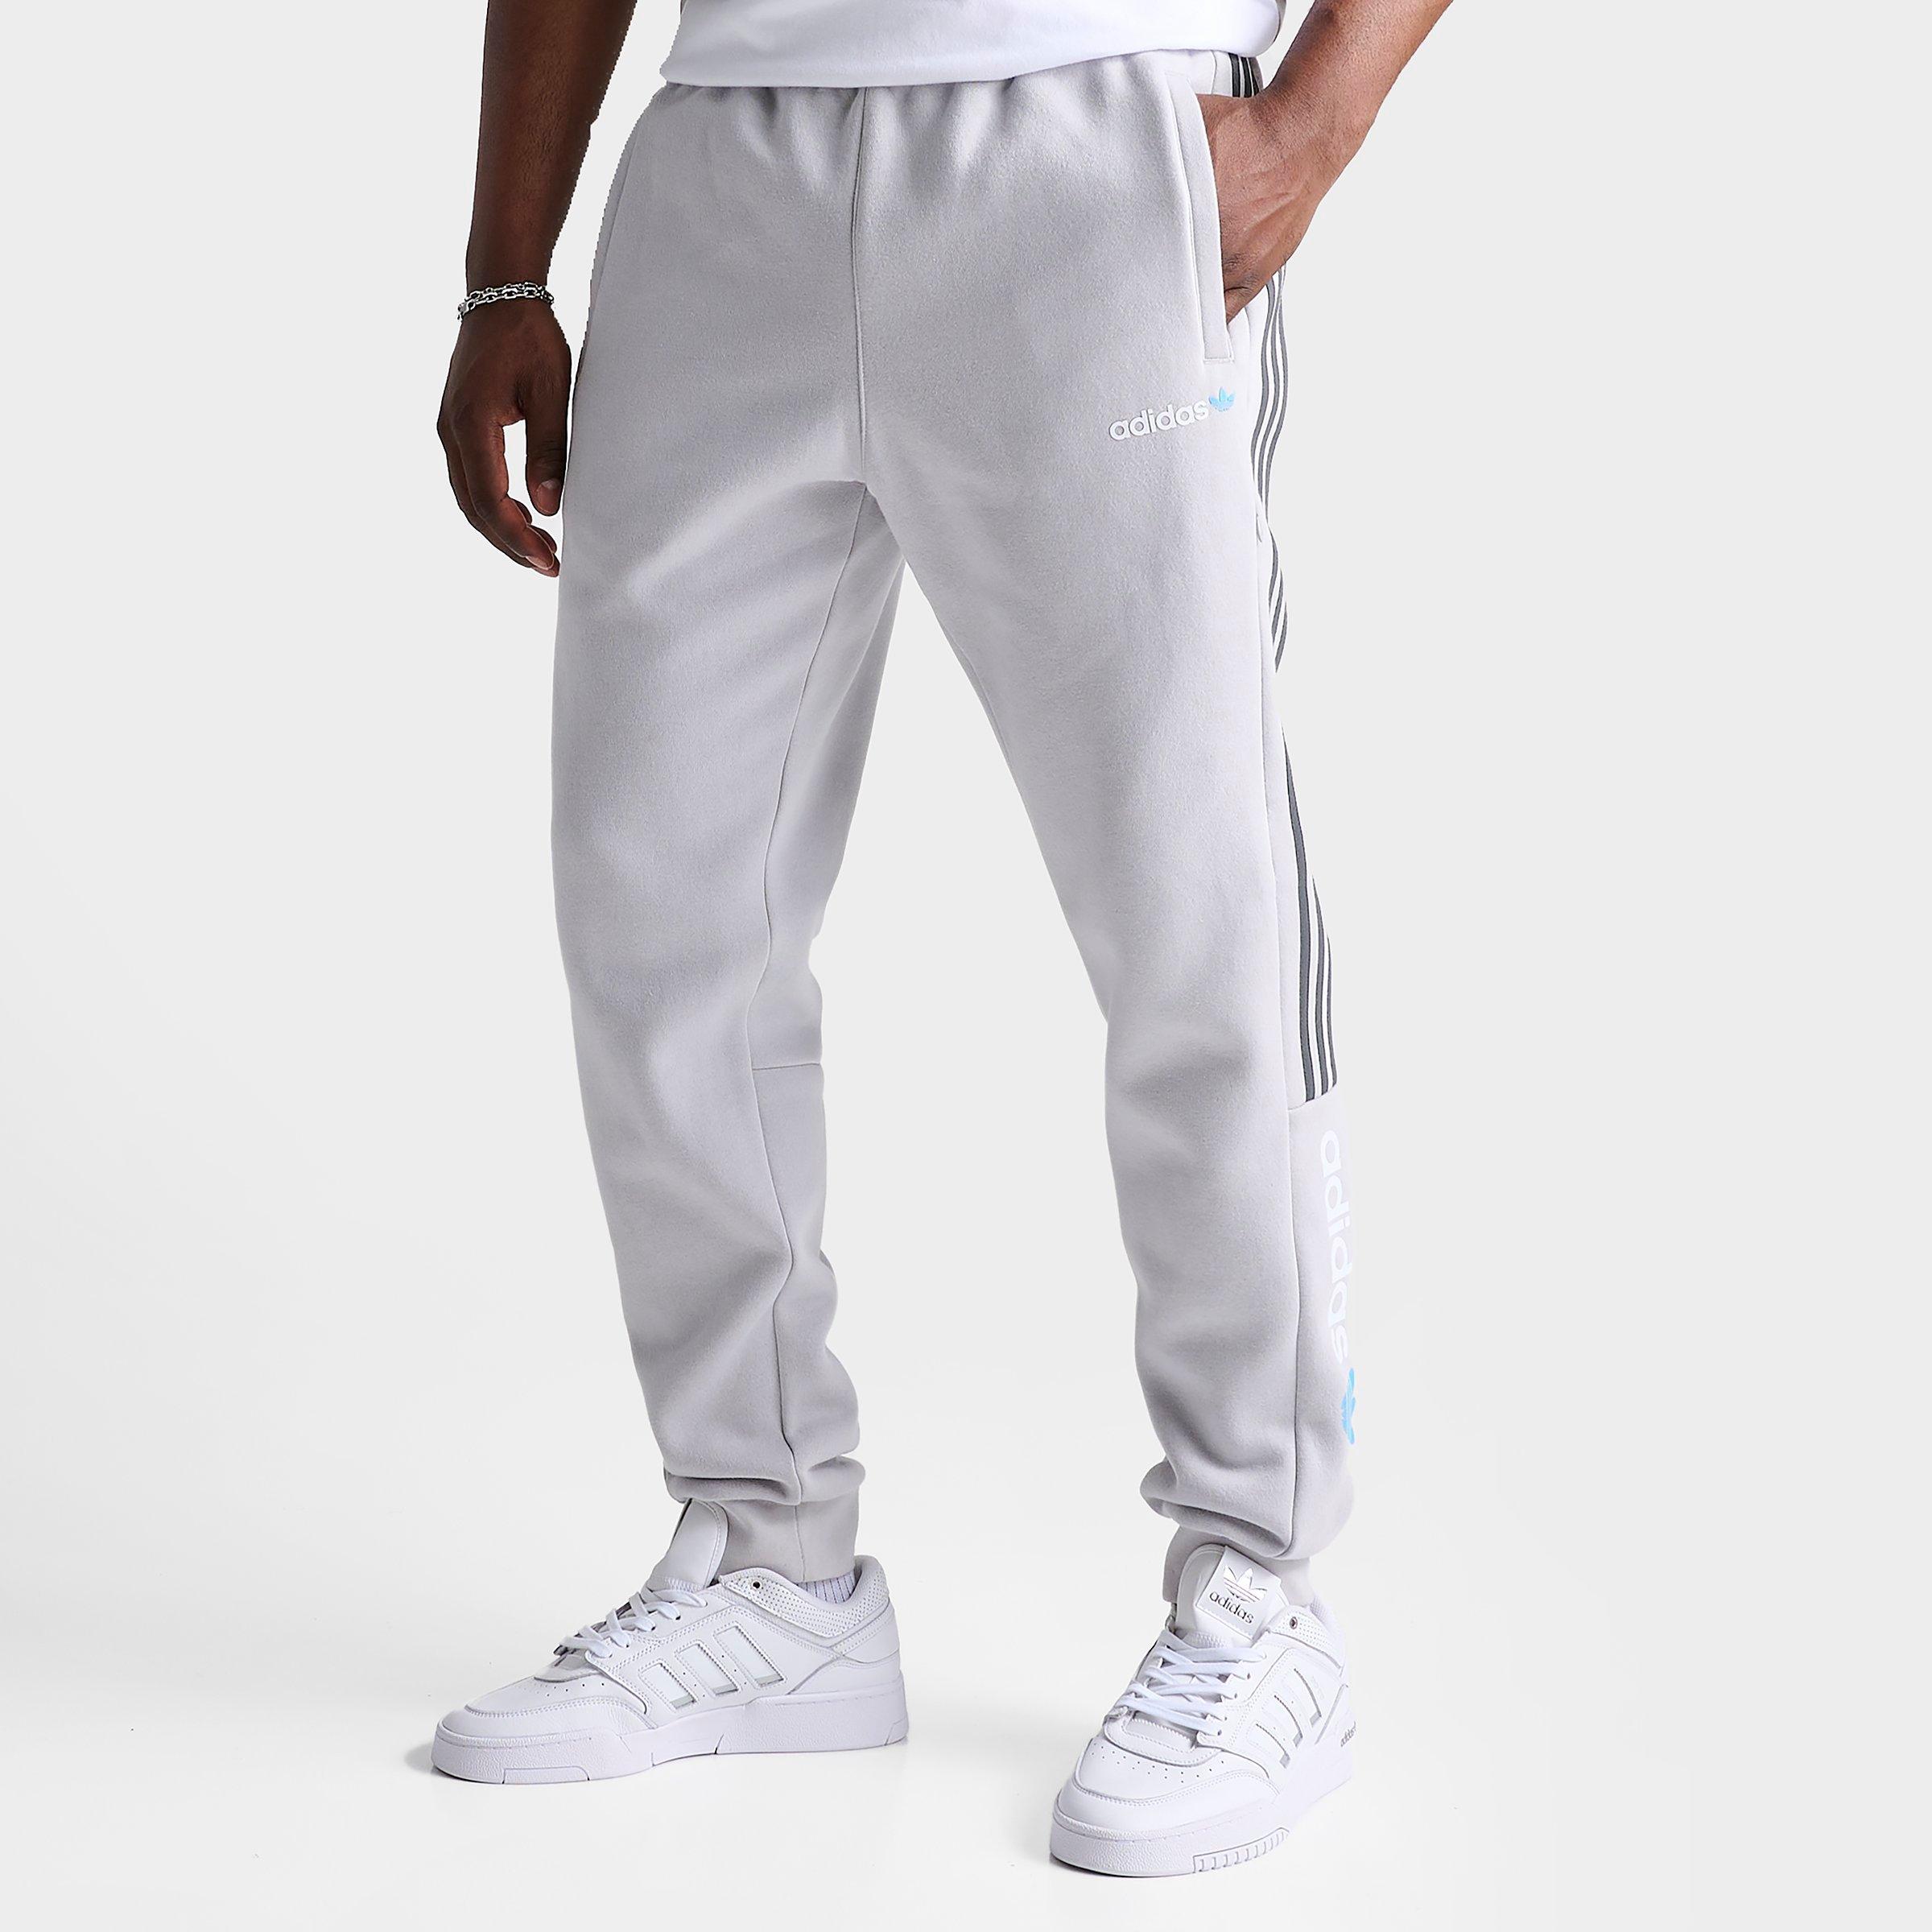 Shop Adidas Originals Adidas Men's Originals Cutline And Material Mix Pack Jogger Pants In Grey/semi Burst Blue